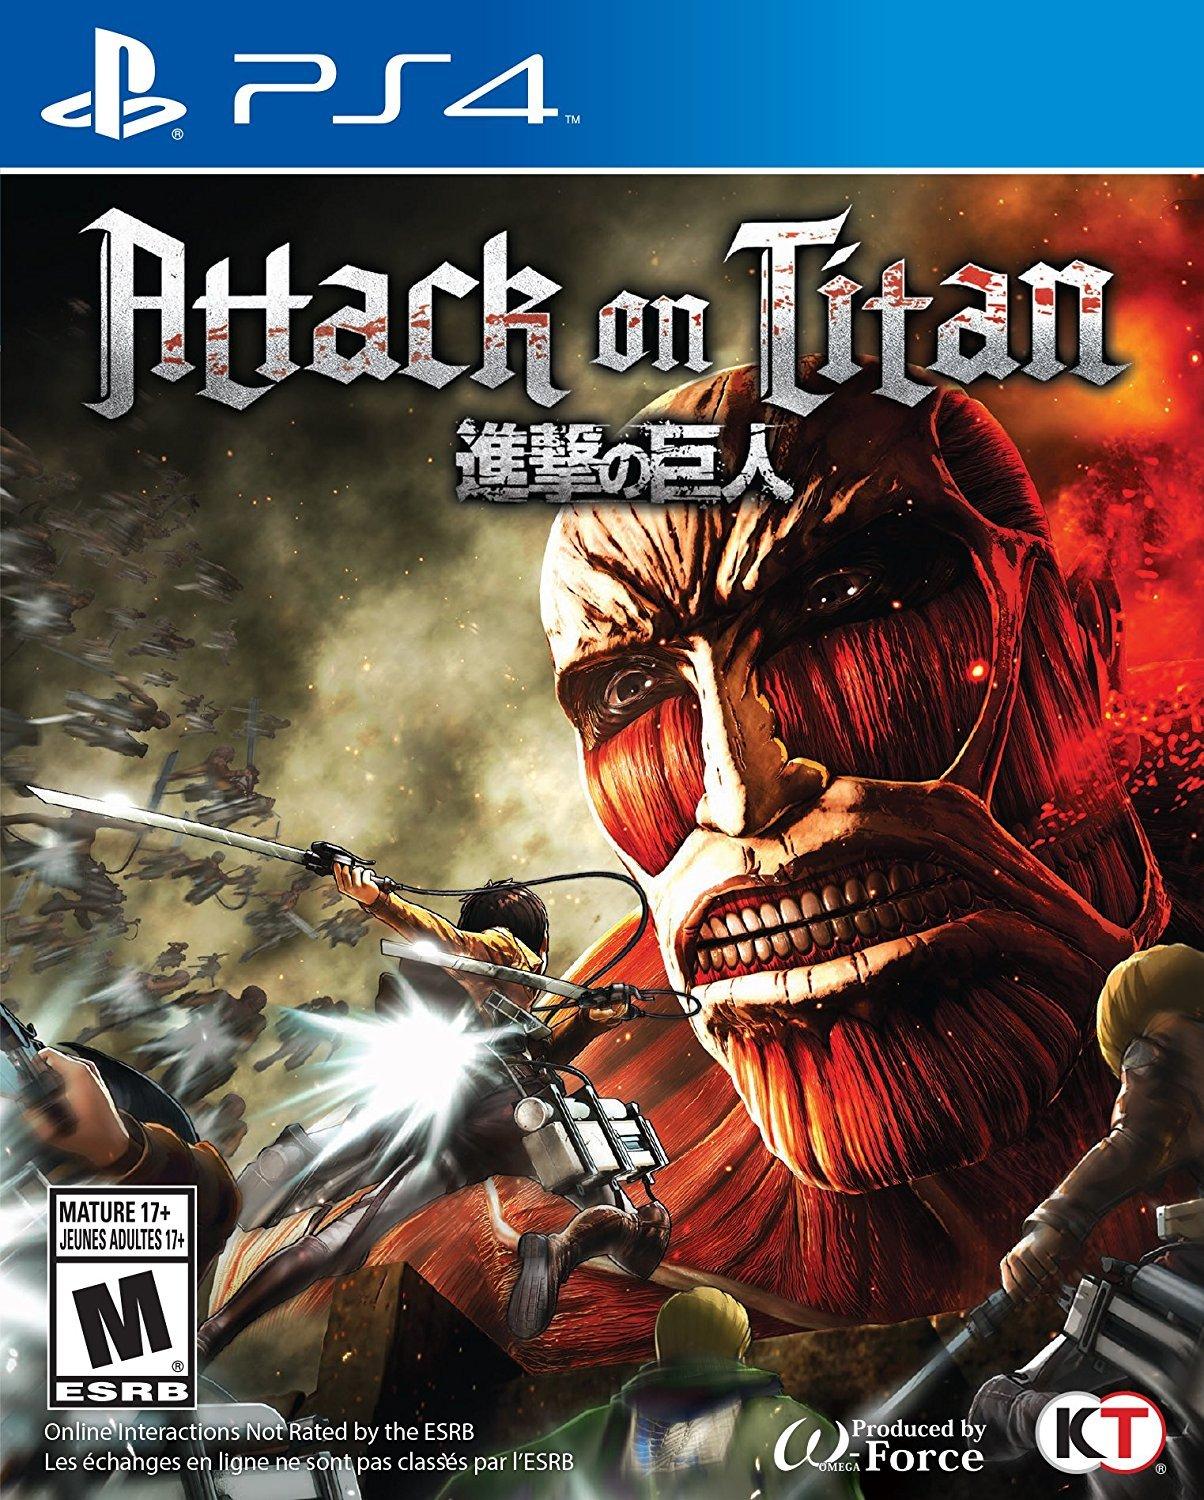 titan video game